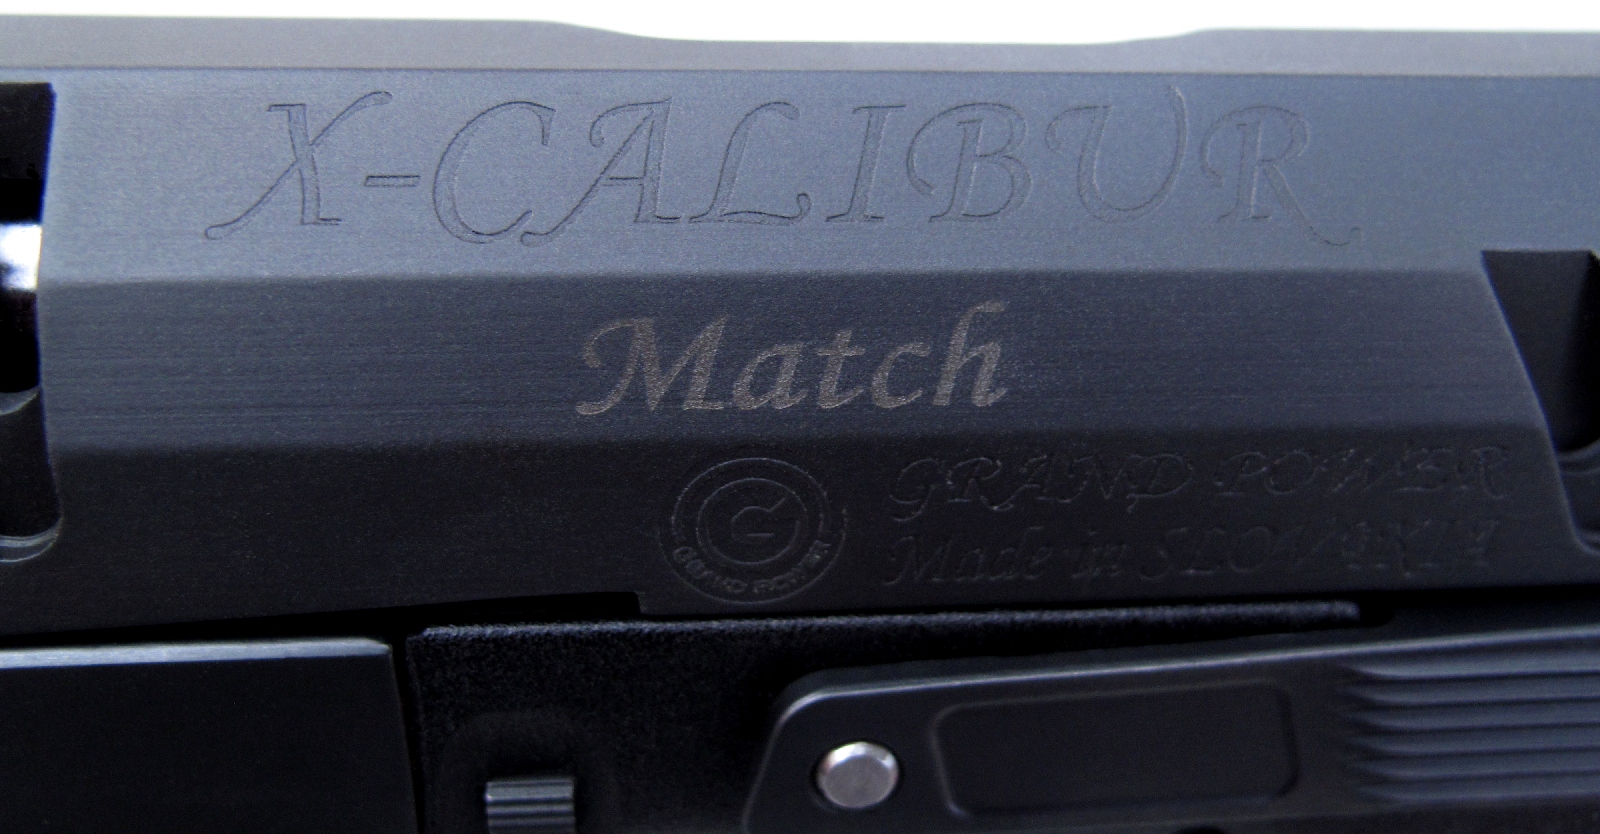 Le nom du modèle, le logo de la firme et son pays de provenance sont gravés sur le côté gauche de la culasse à glissière.